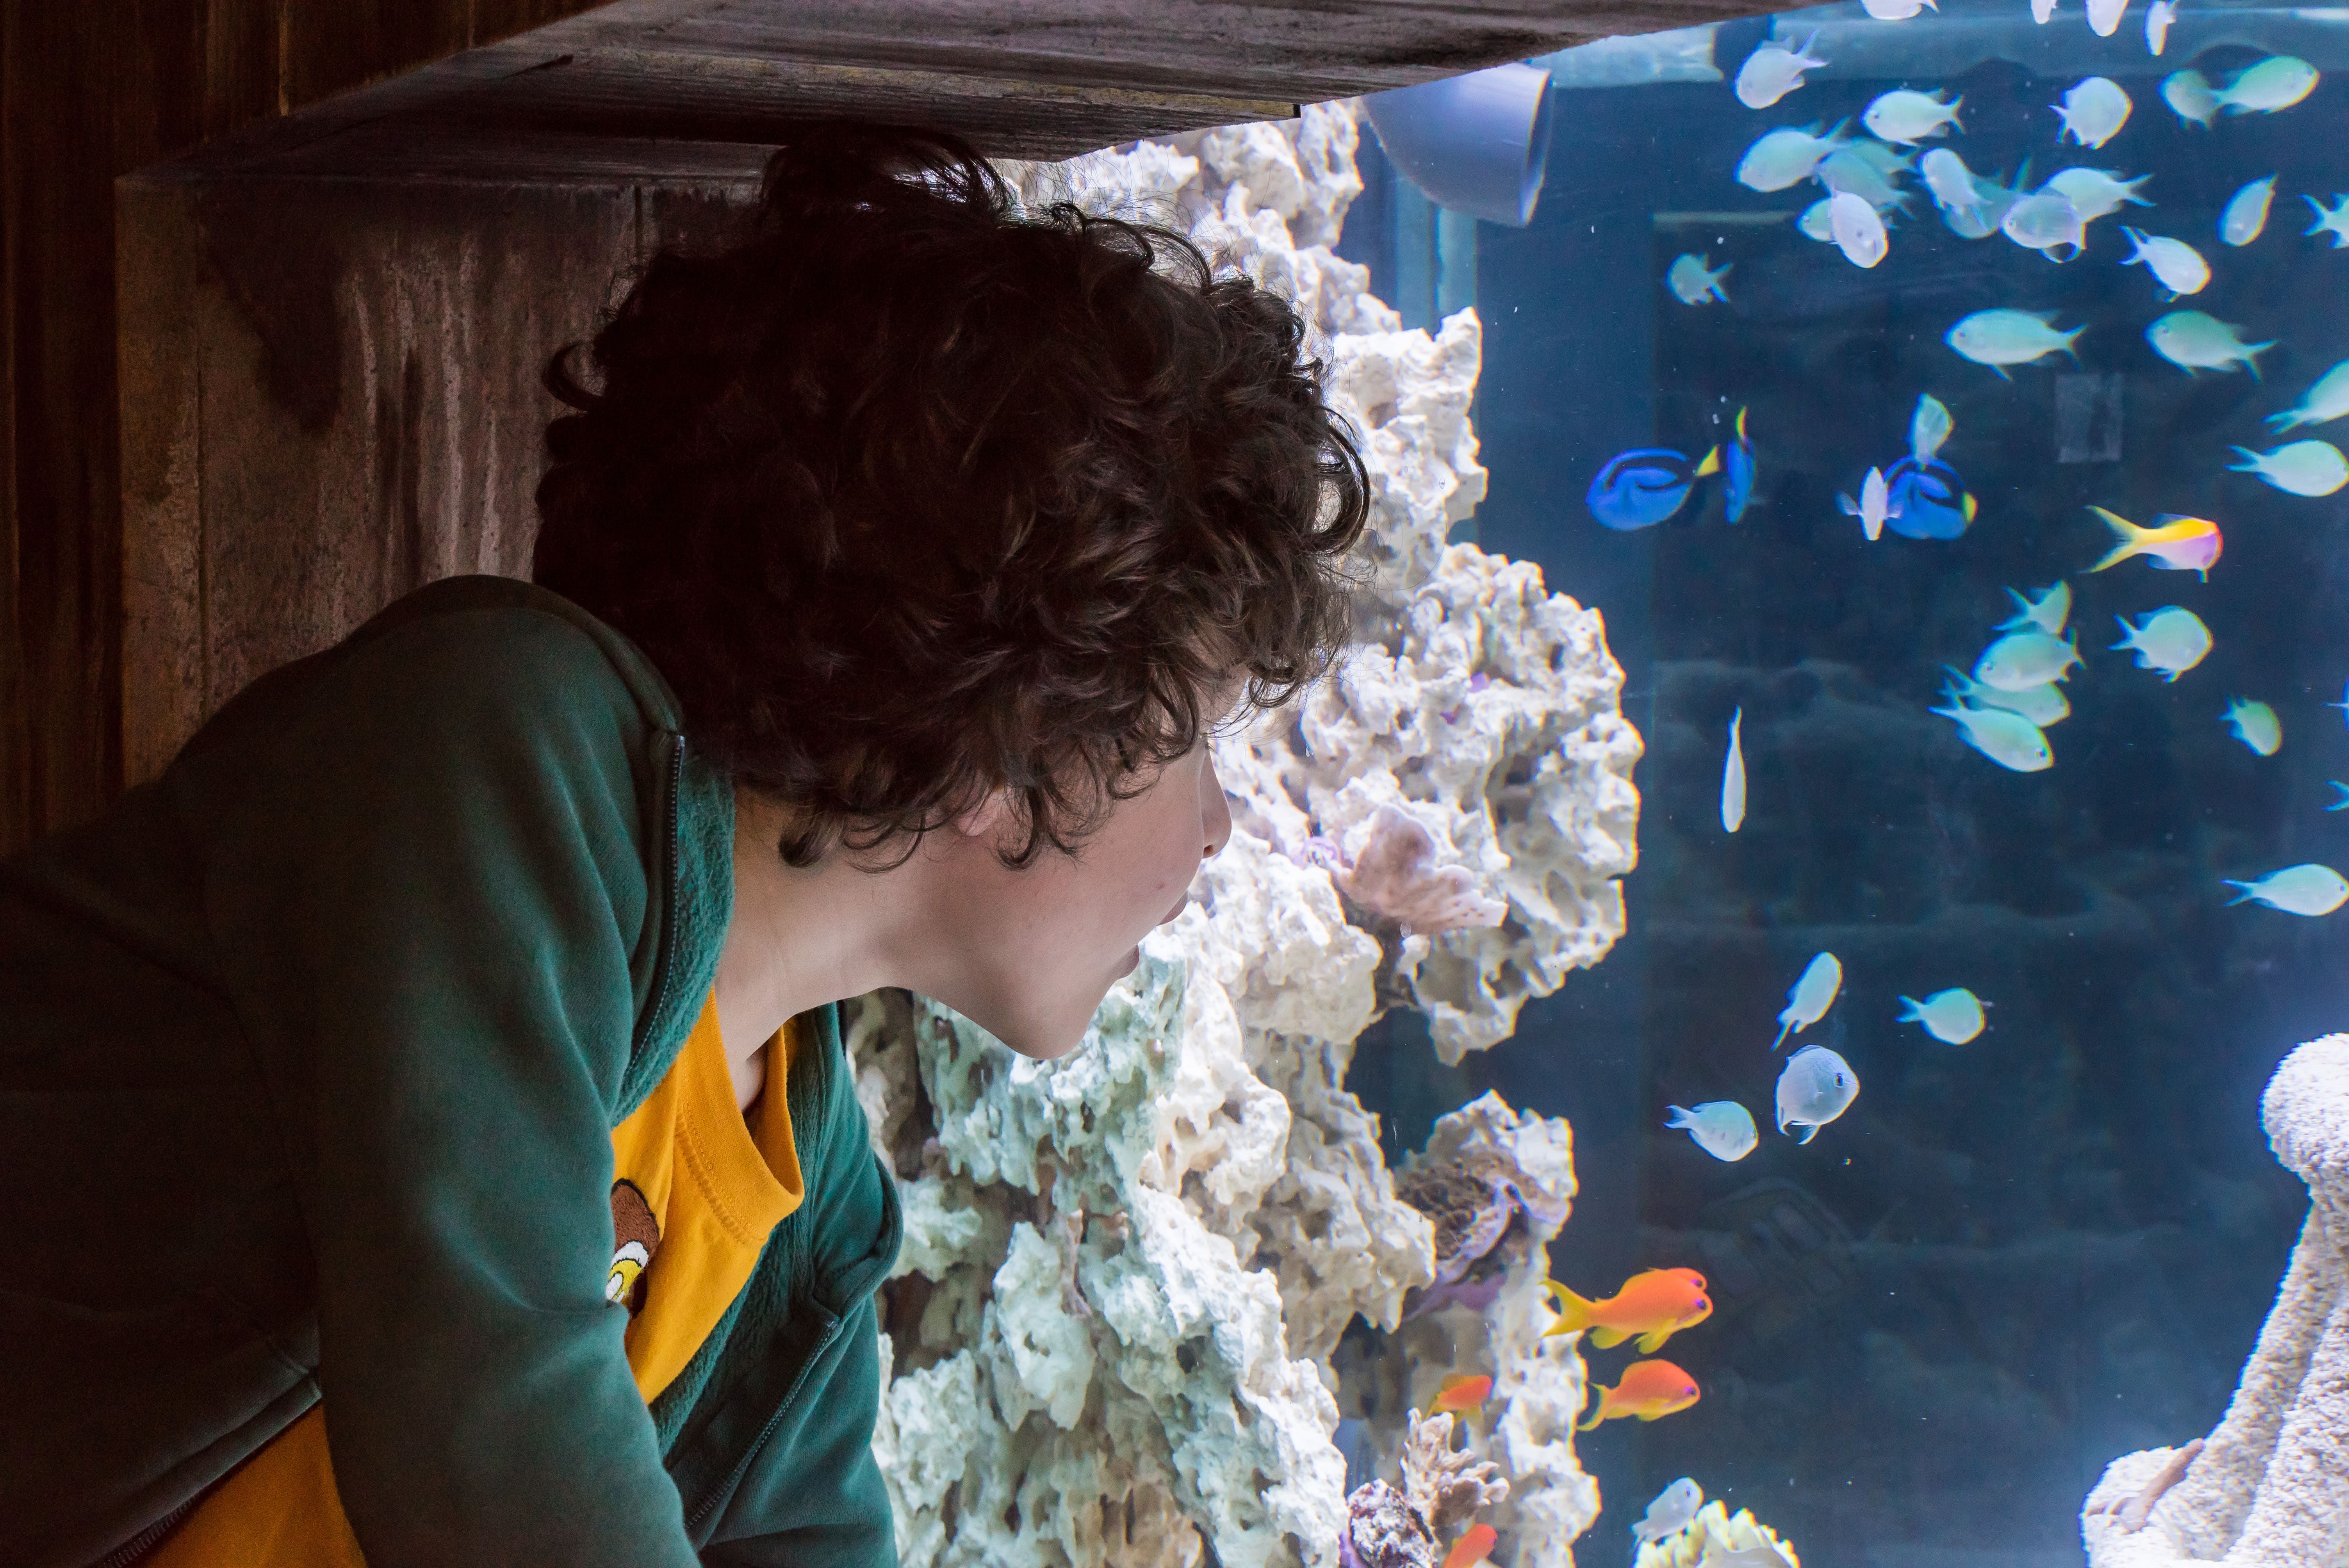 Boy looking at a tank at SEA LIFE aquarium